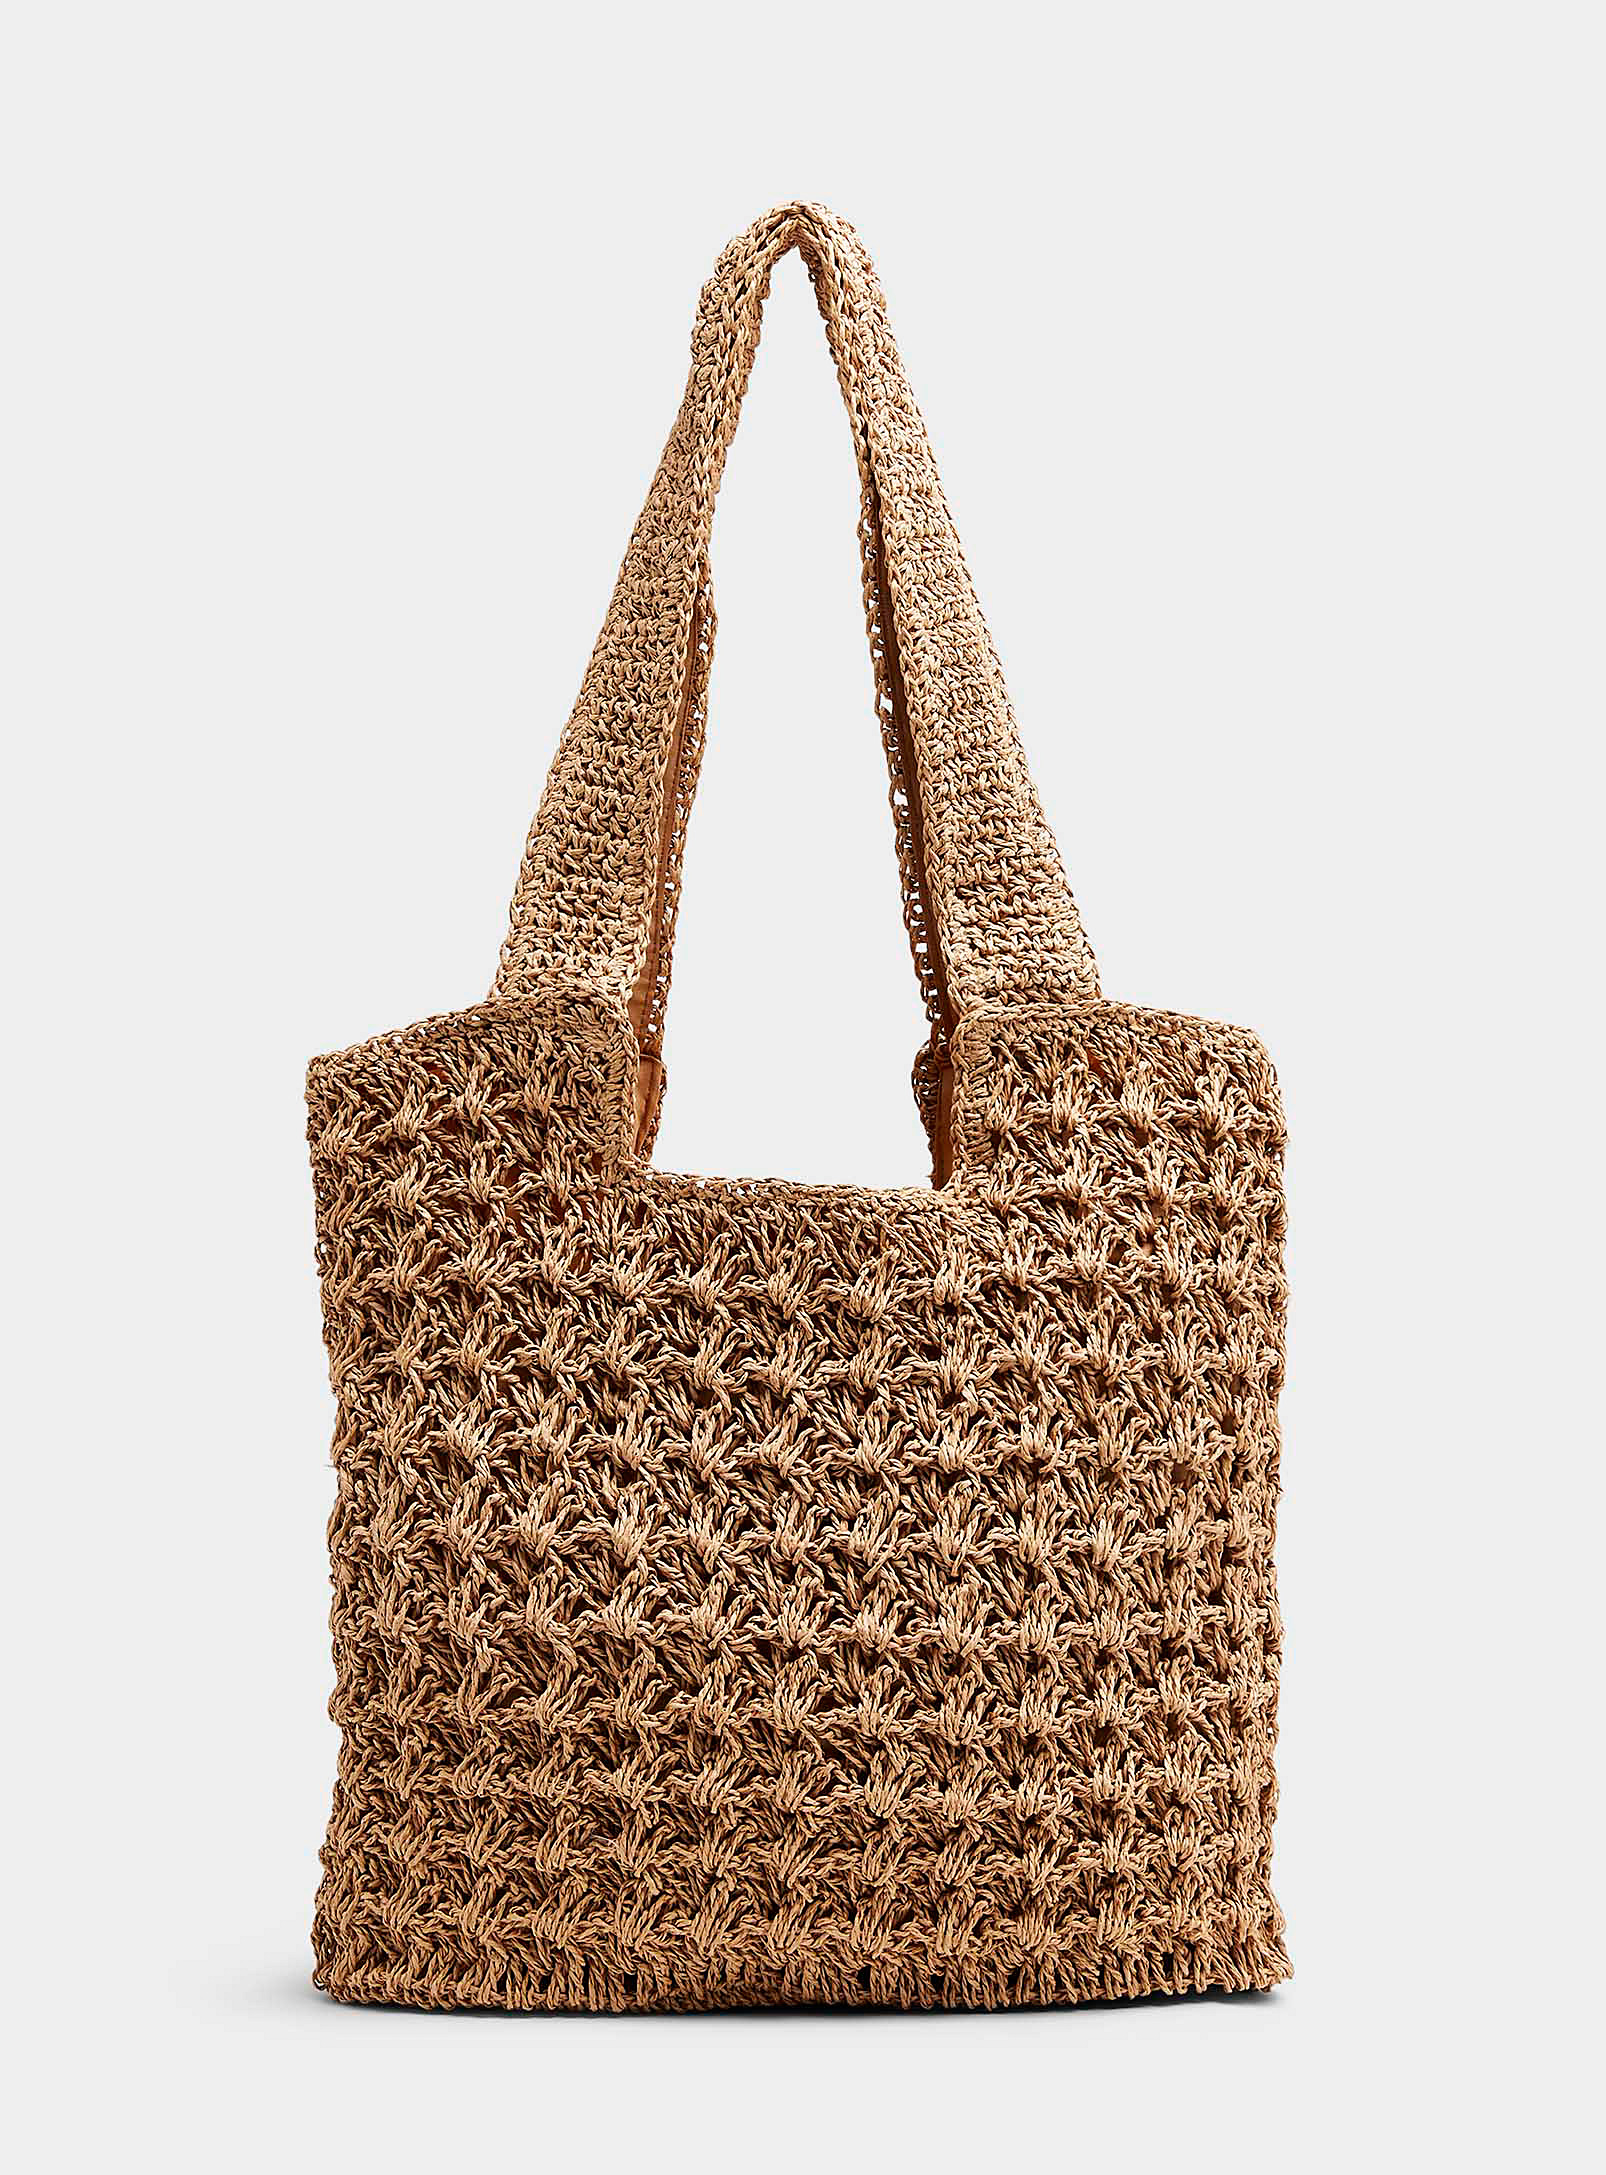 Simons - Women's Braided straw openwork Tote Bag